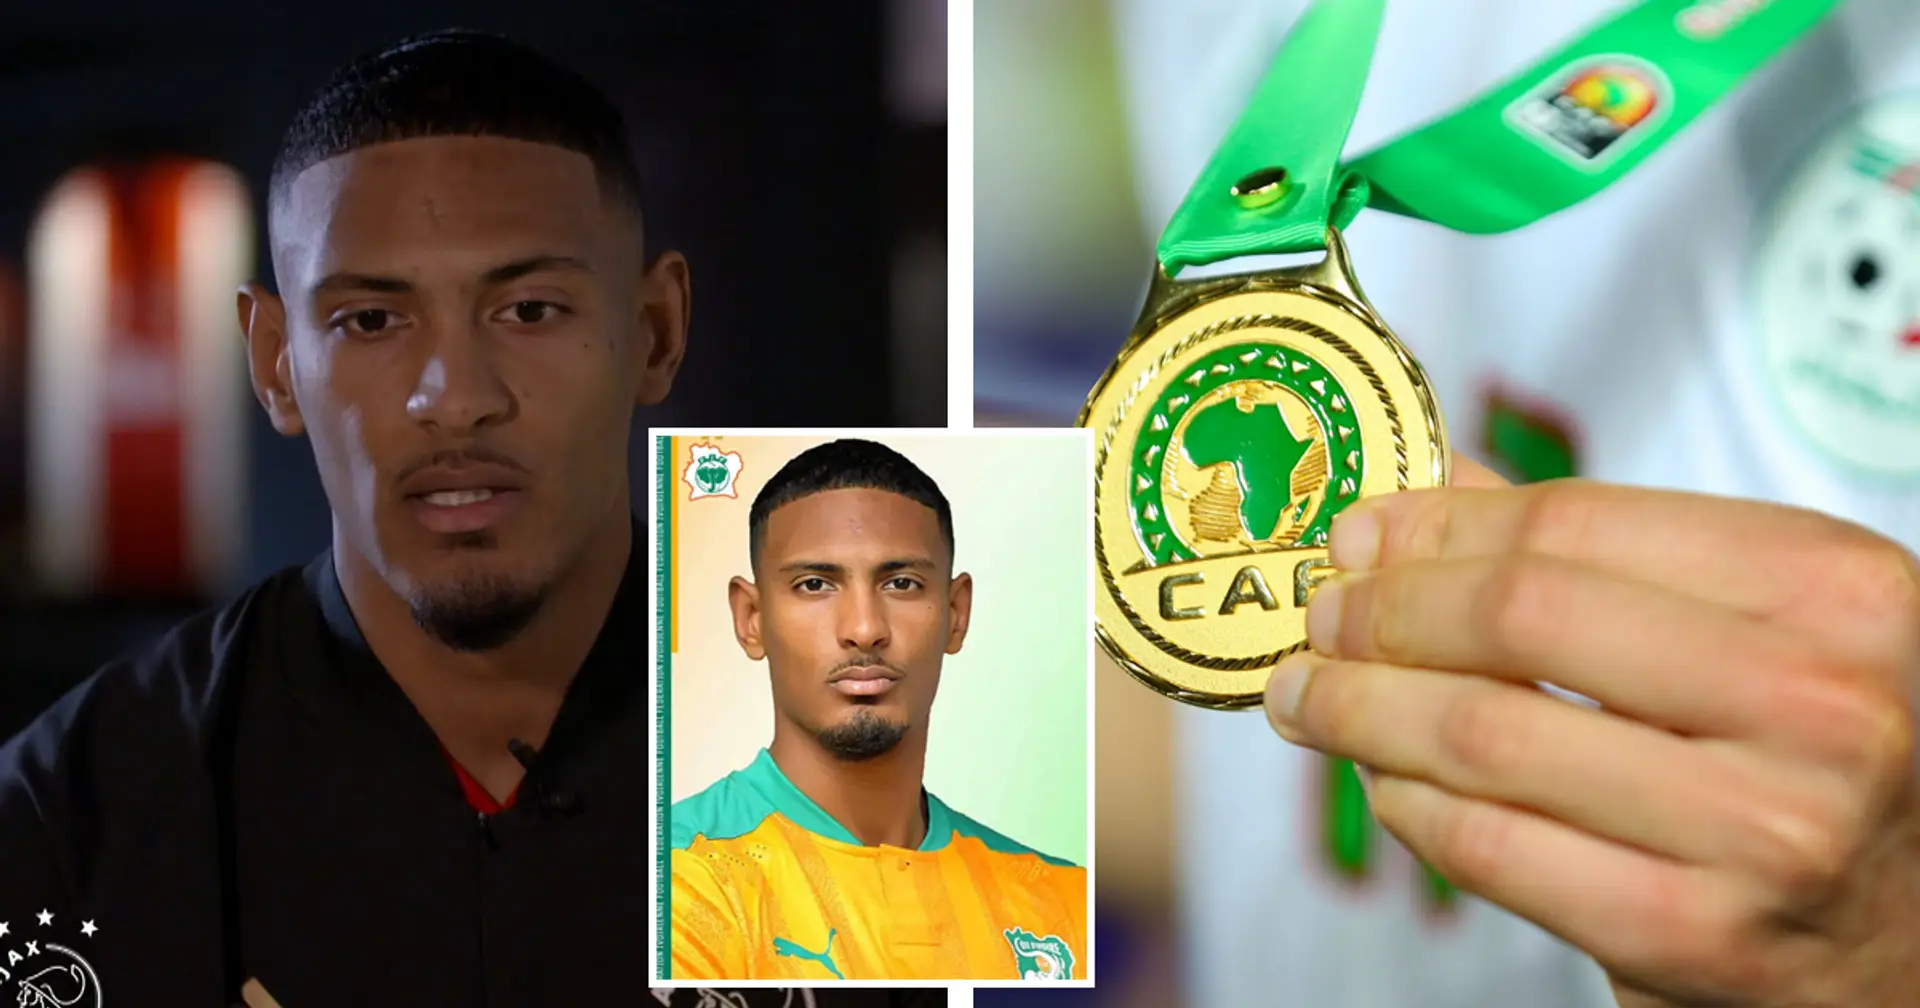 "Dies zeigt, wie wenig Respekt man vor Afrika hat": Haller wütet nach der Frage über möglichen Verzicht auf Afrika-Cup-Reise